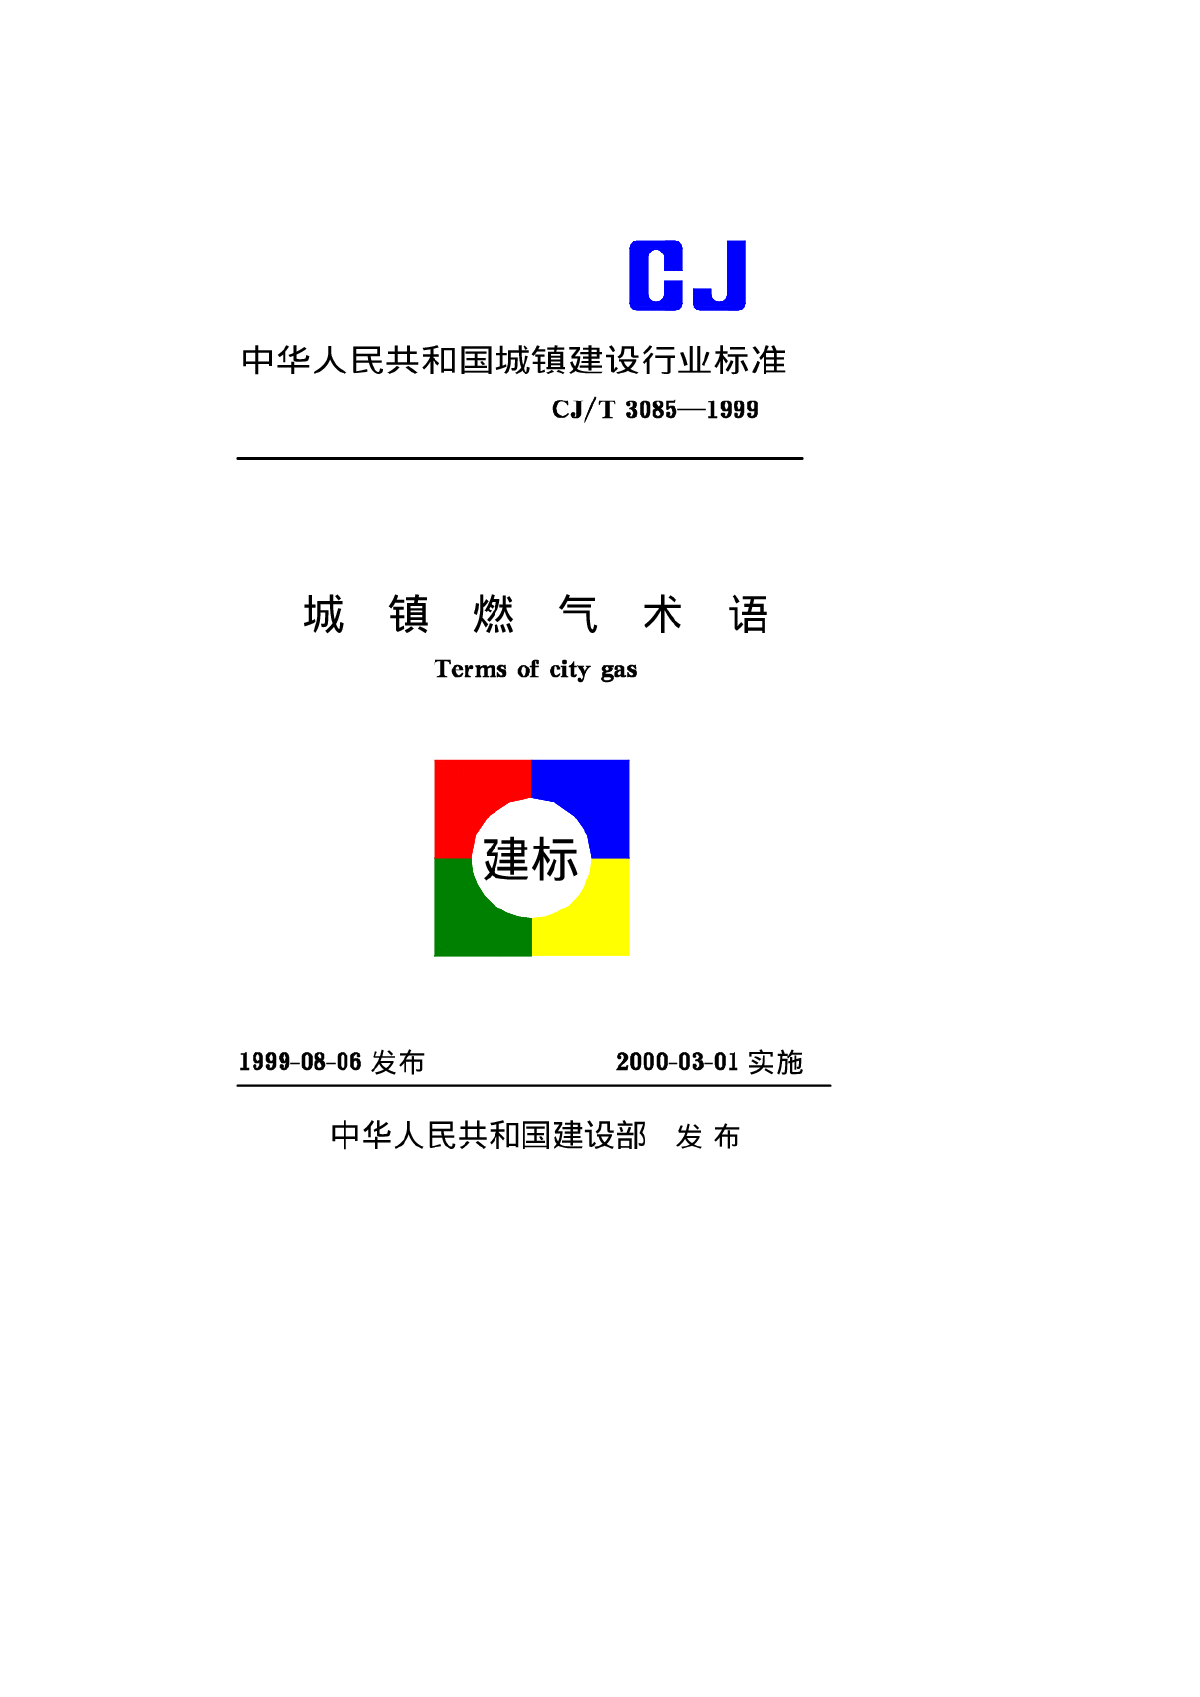 CJT3085-1999城镇燃气术语-图一